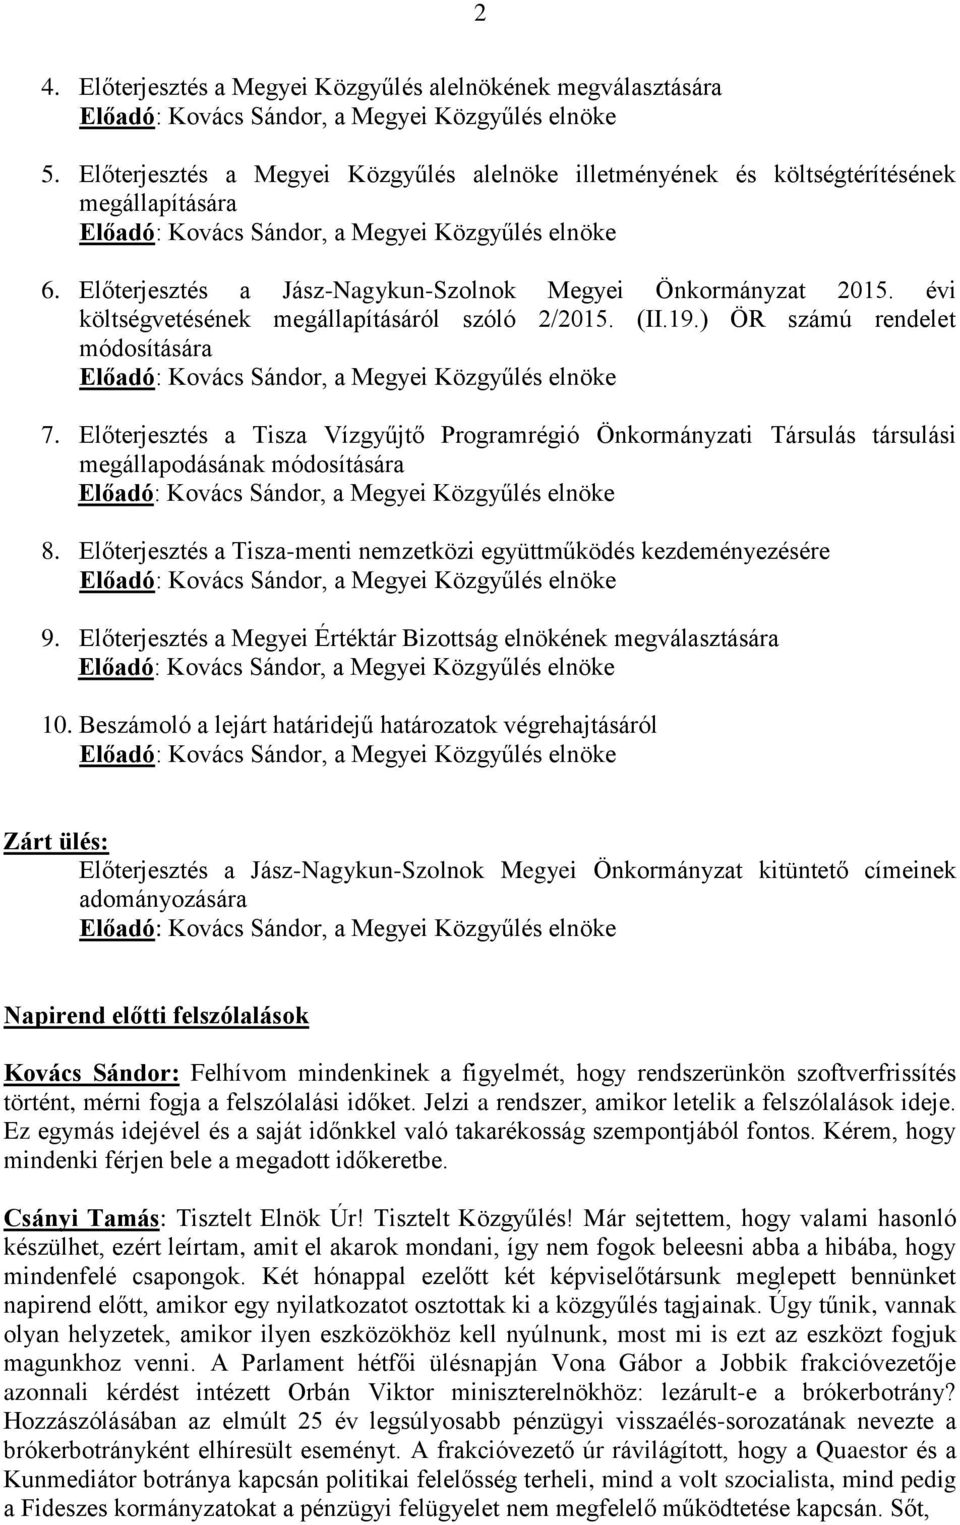 Előterjesztés a Jász-Nagykun-Szolnok Megyei Önkormányzat 2015. évi költségvetésének megállapításáról szóló 2/2015. (II.19.